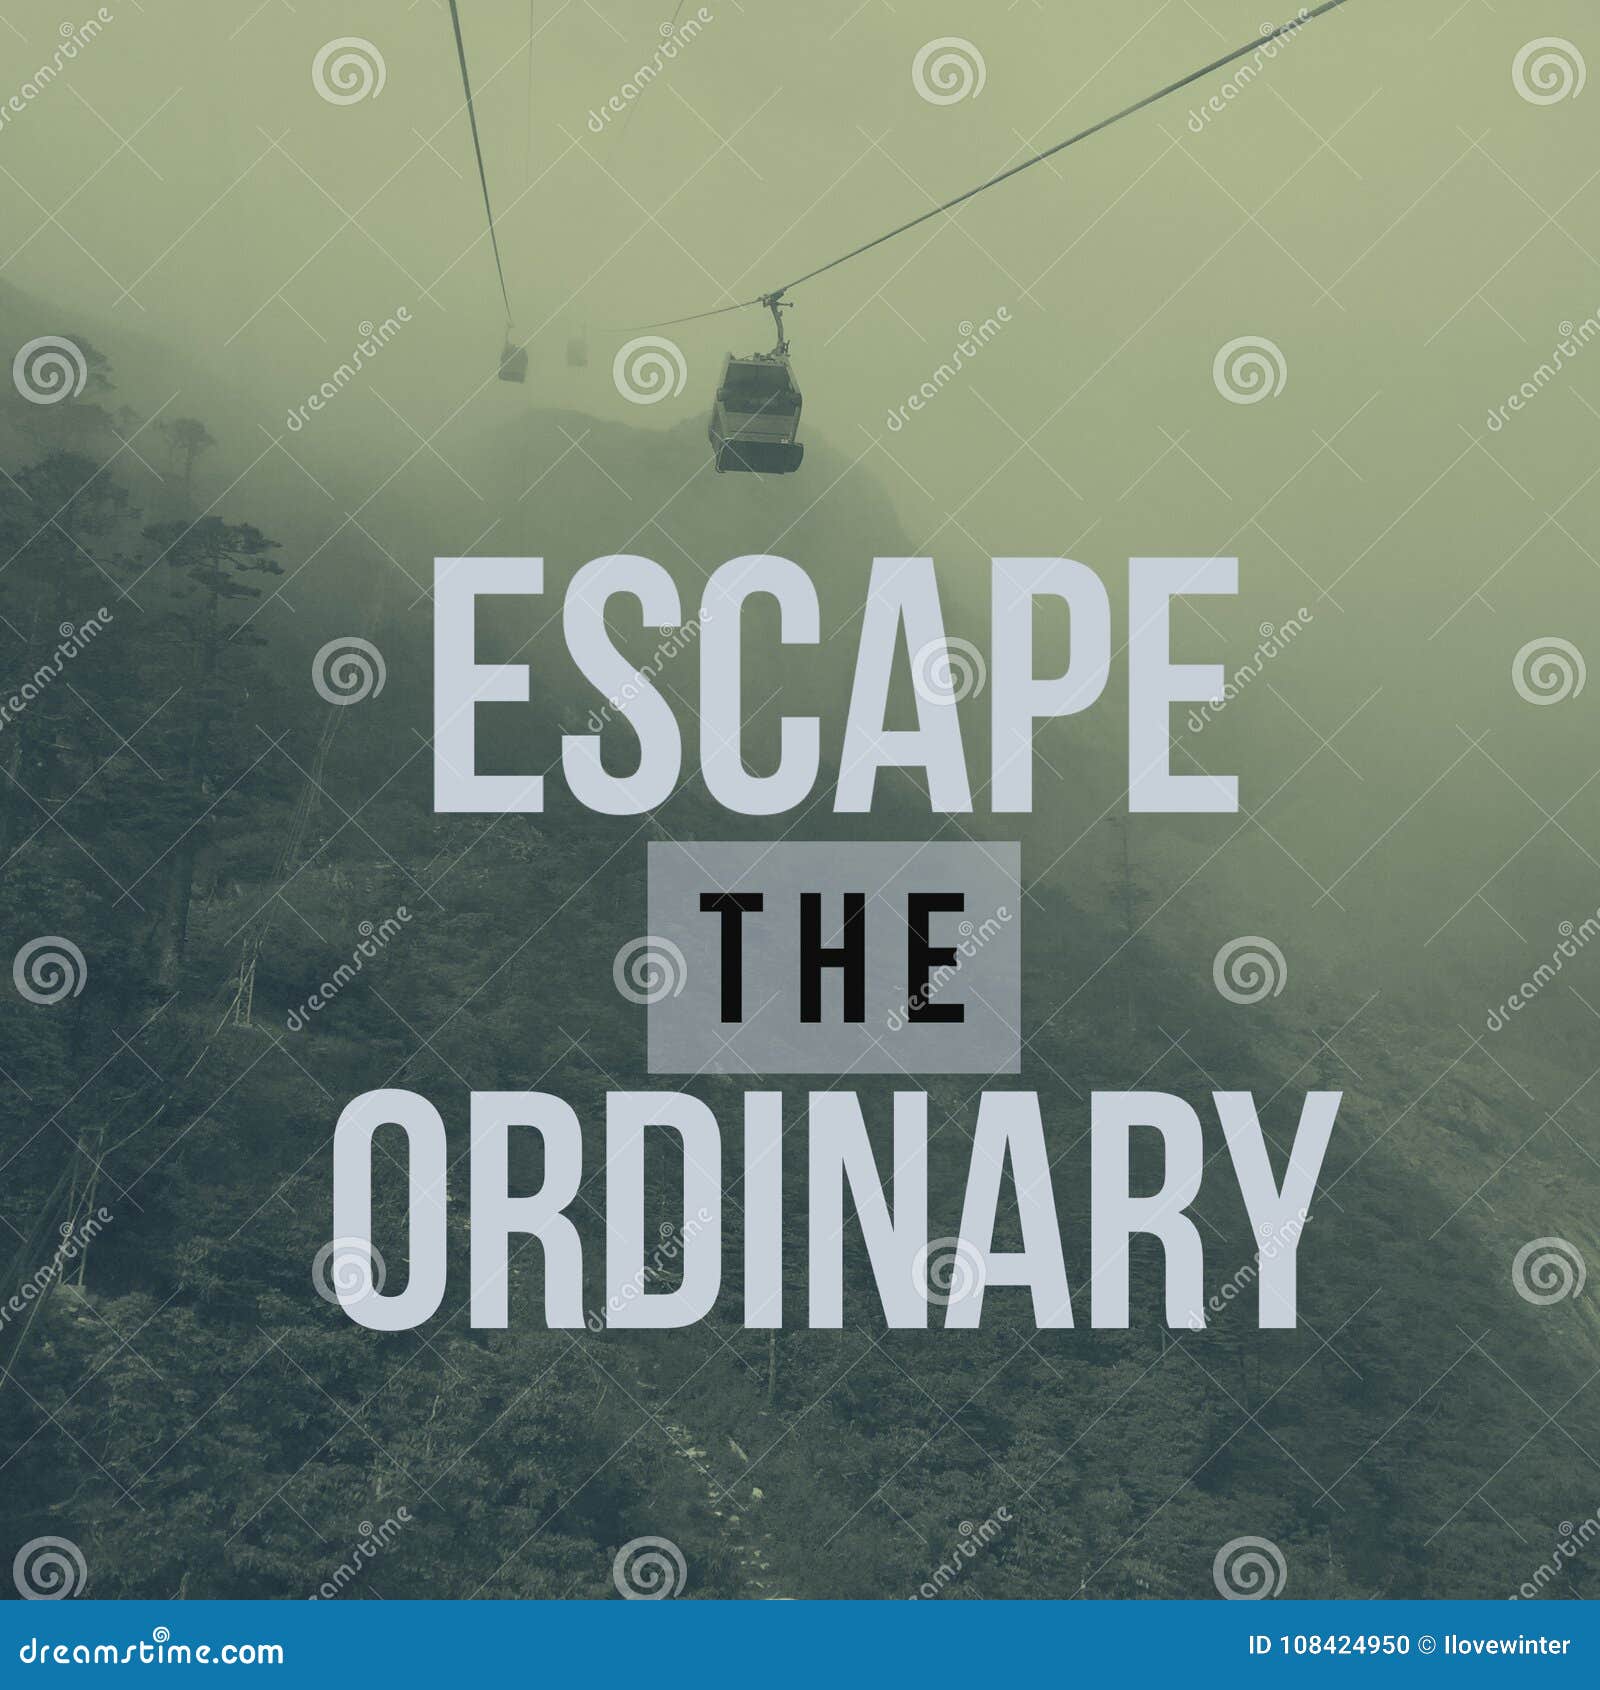 escape the ordinary travel